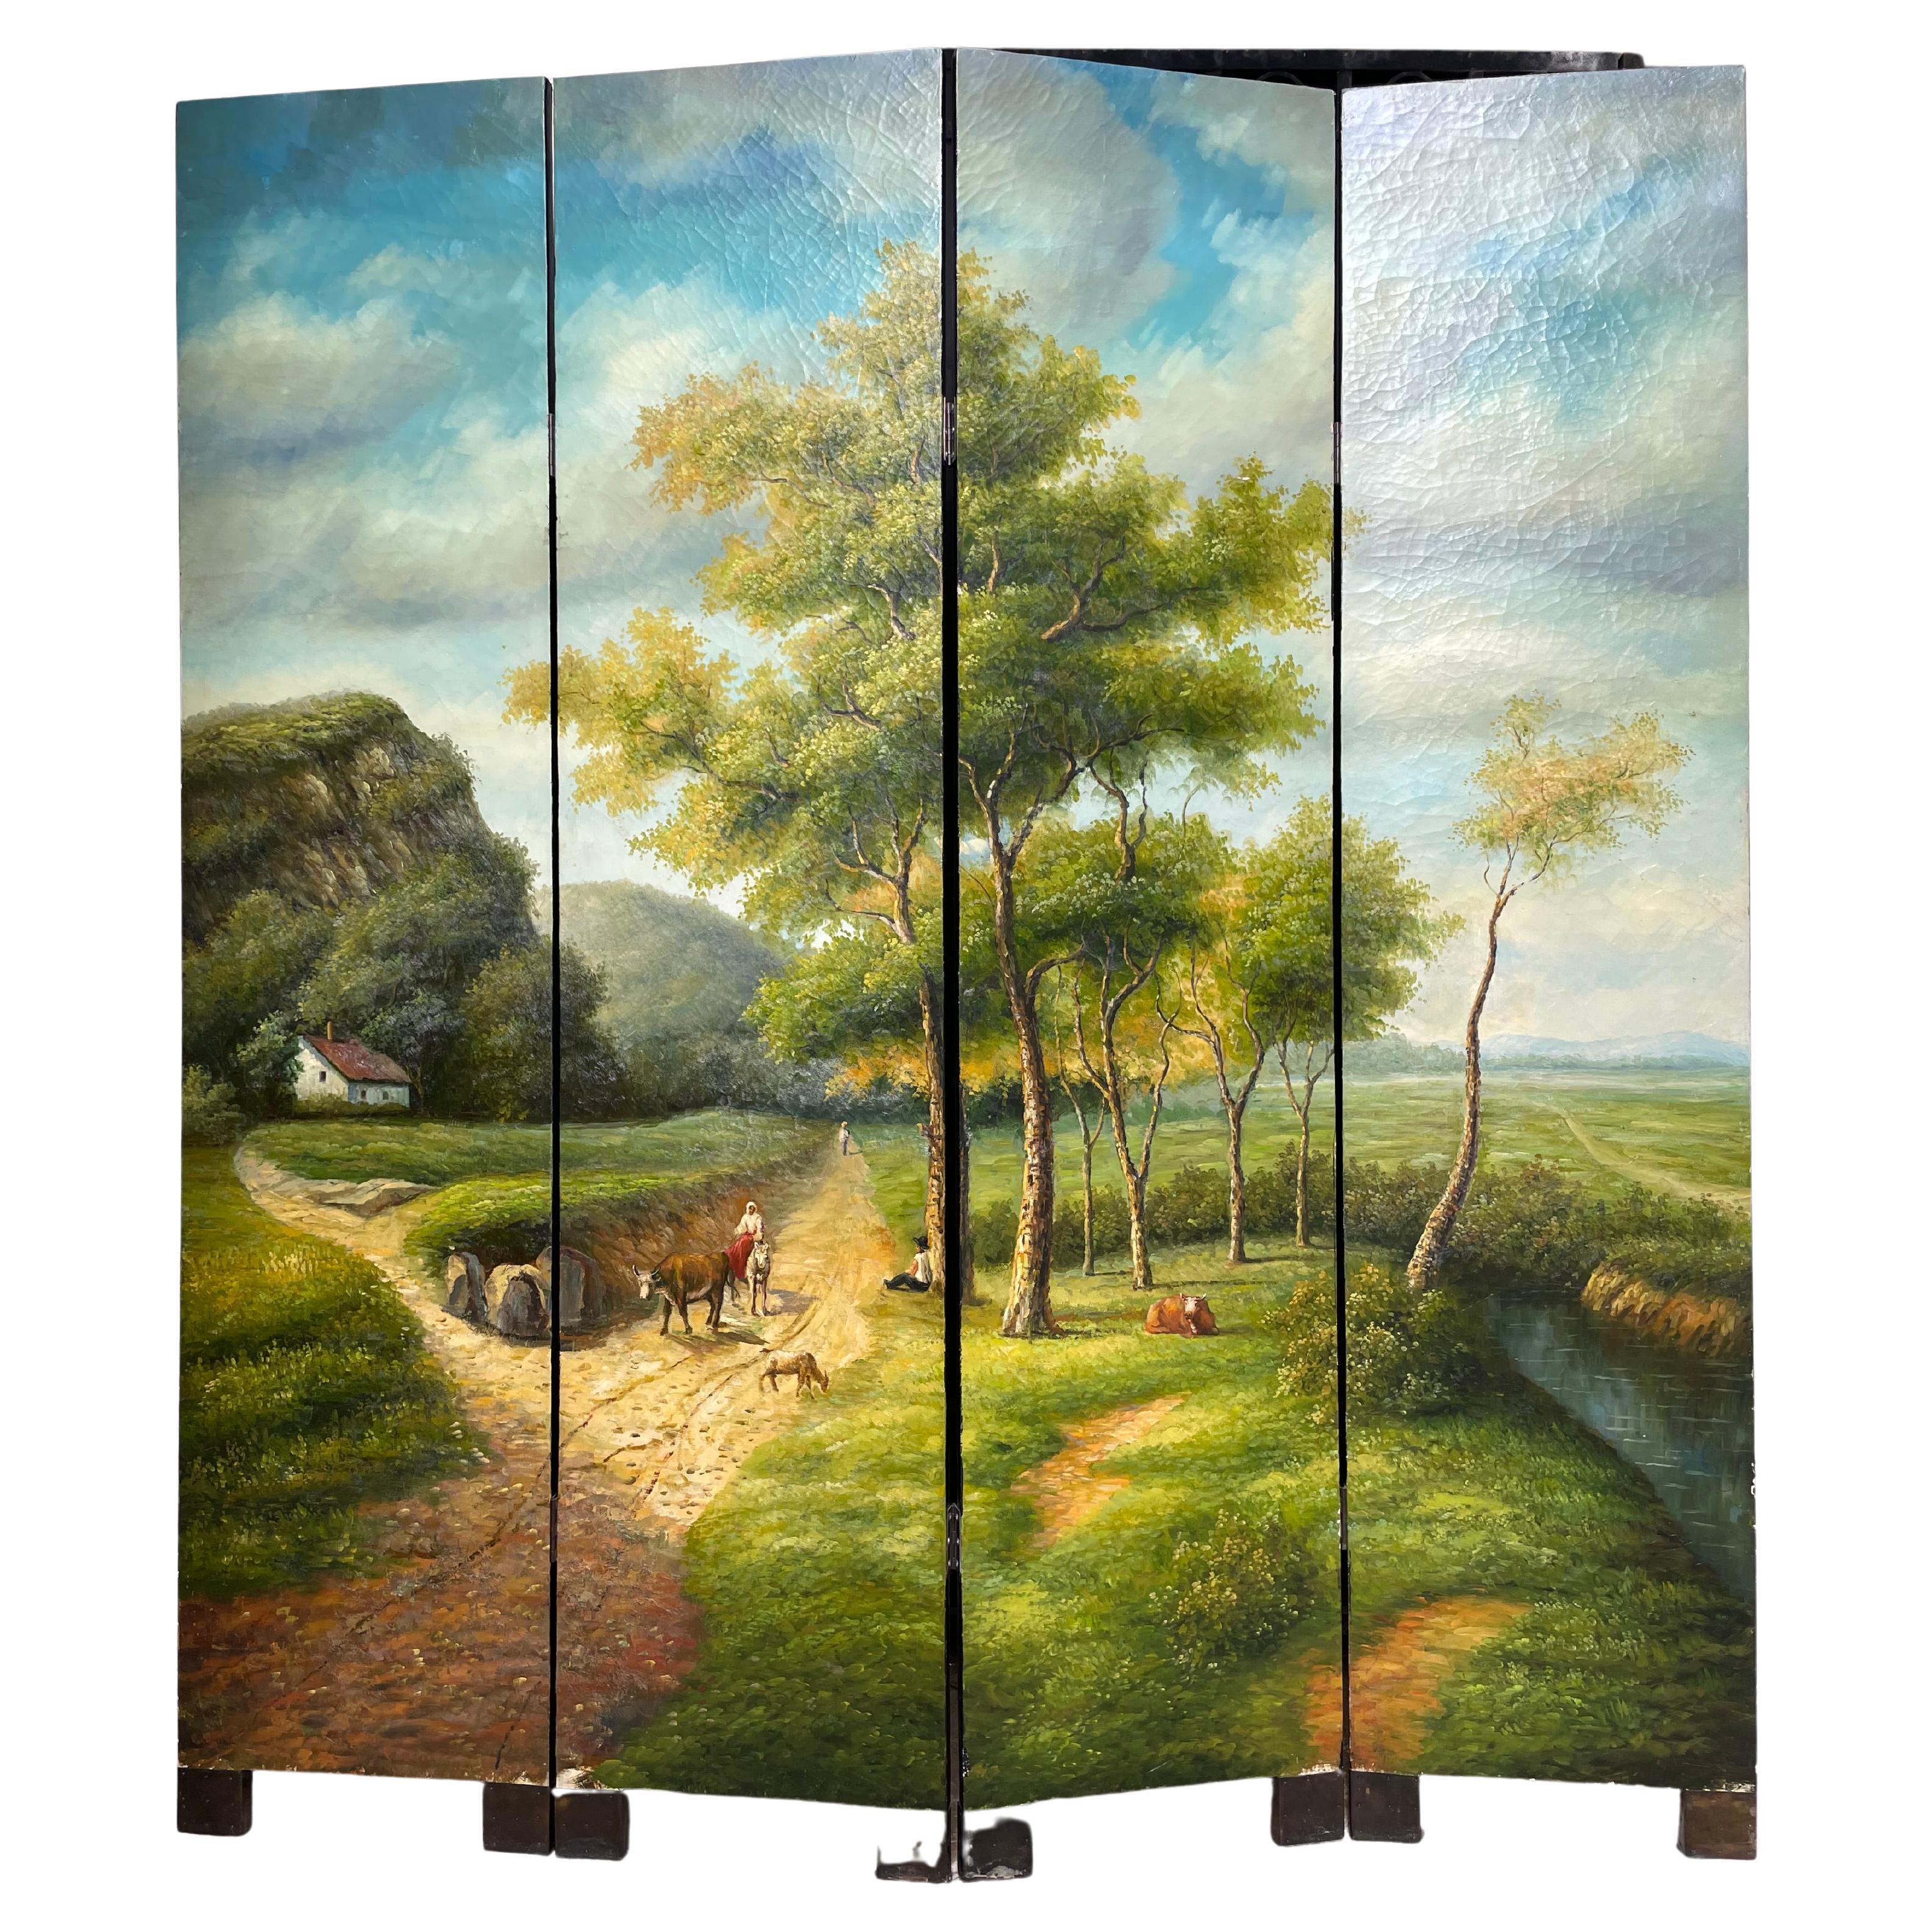 Paravent en bois à quatre feuilles. L'huile sur toile représente une scène de la campagne française au 19ème siècle. Un magnifique ciel bleu nuageux et un paysage vert, une maison traditionnelle, des animaux et un fermier sont les éléments